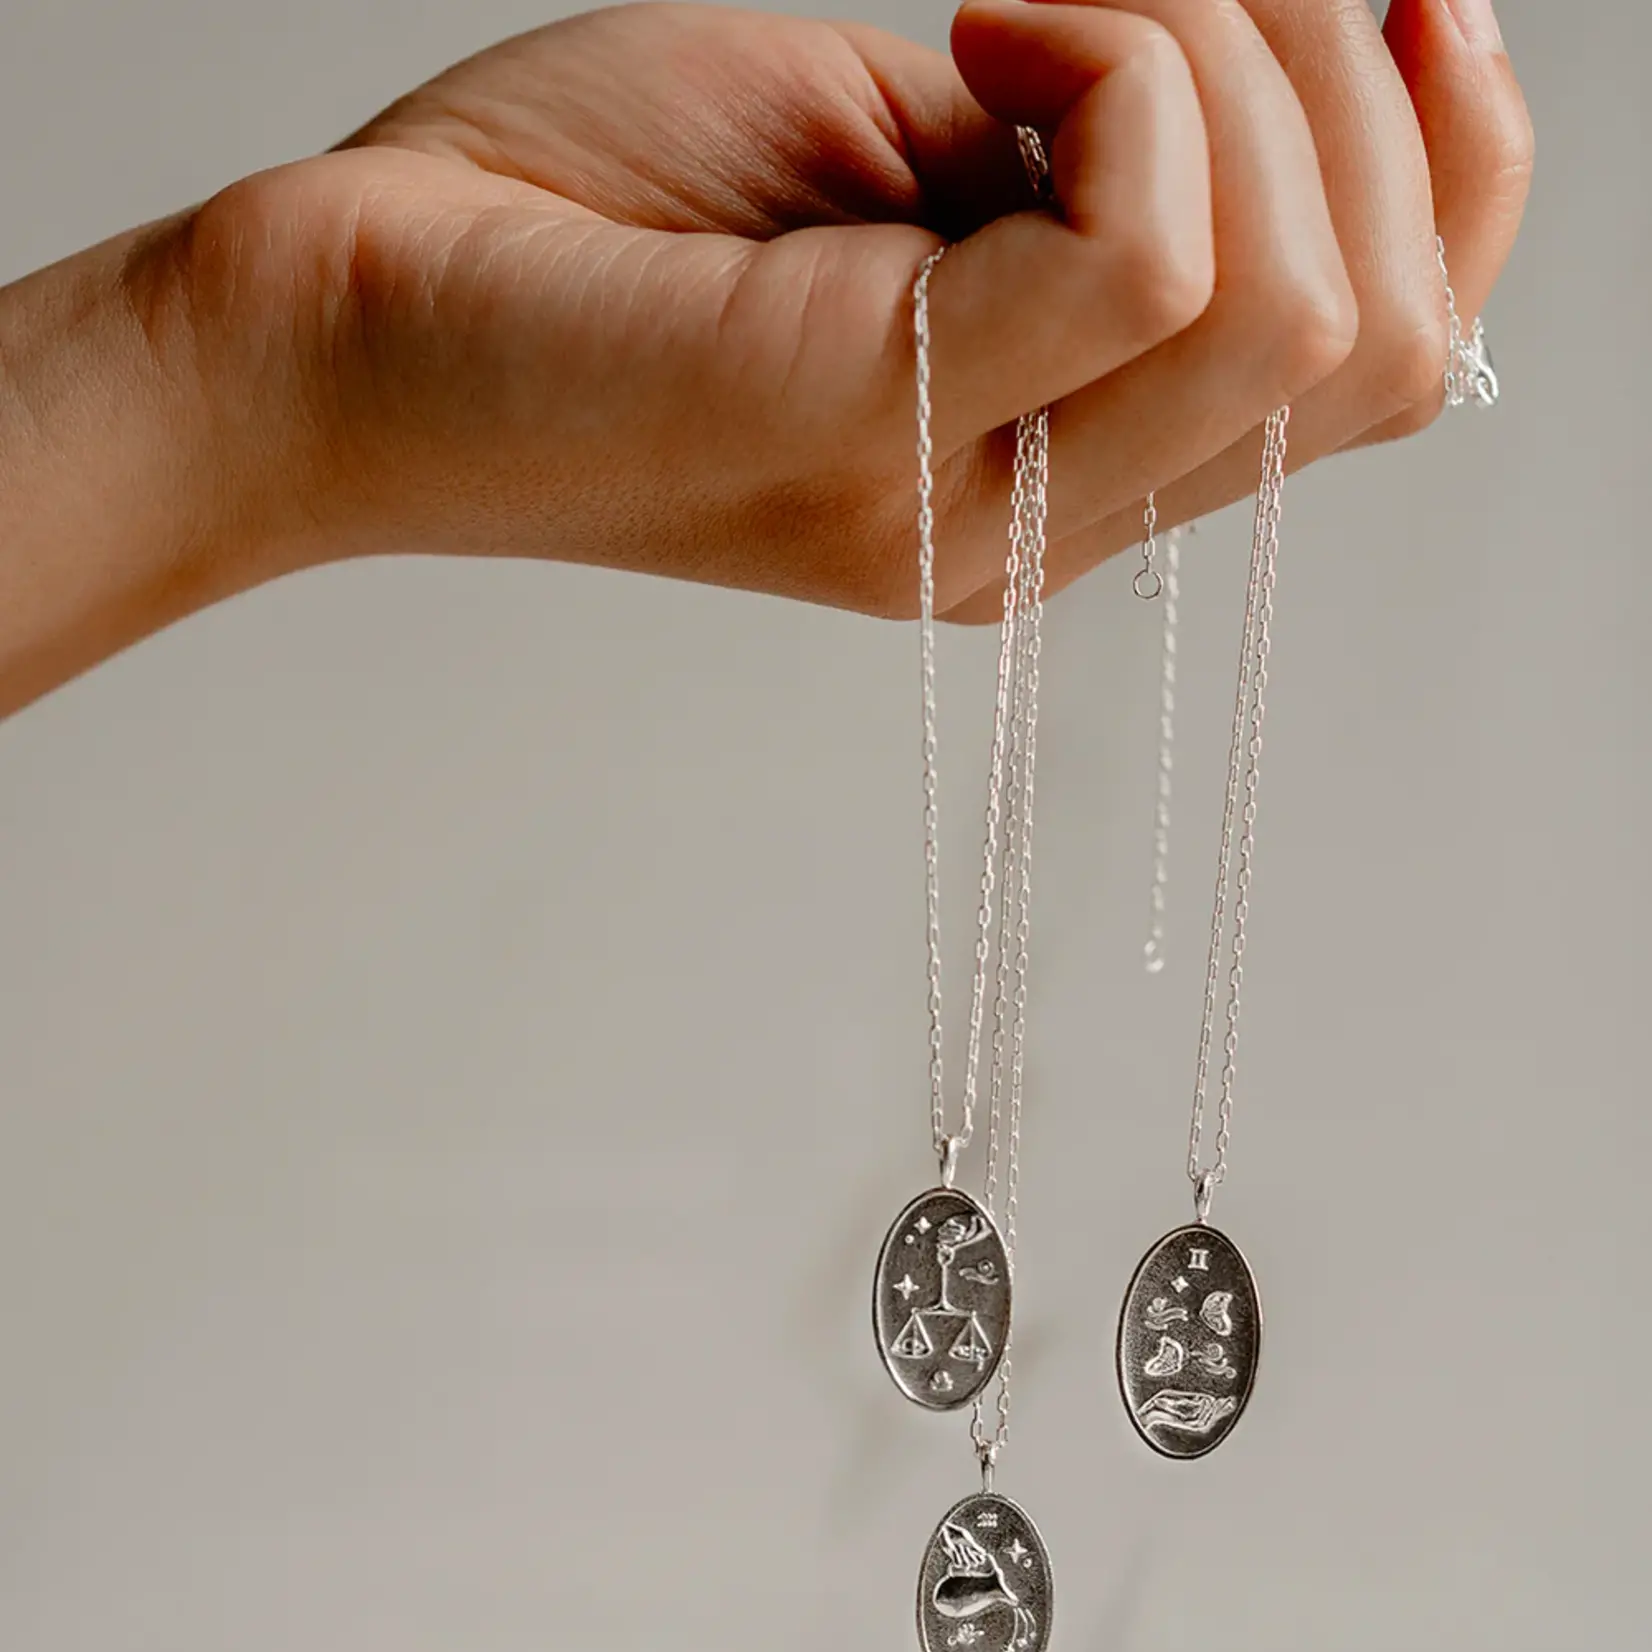 Welldunn jewelry Collier astrologique Bélier - Silver